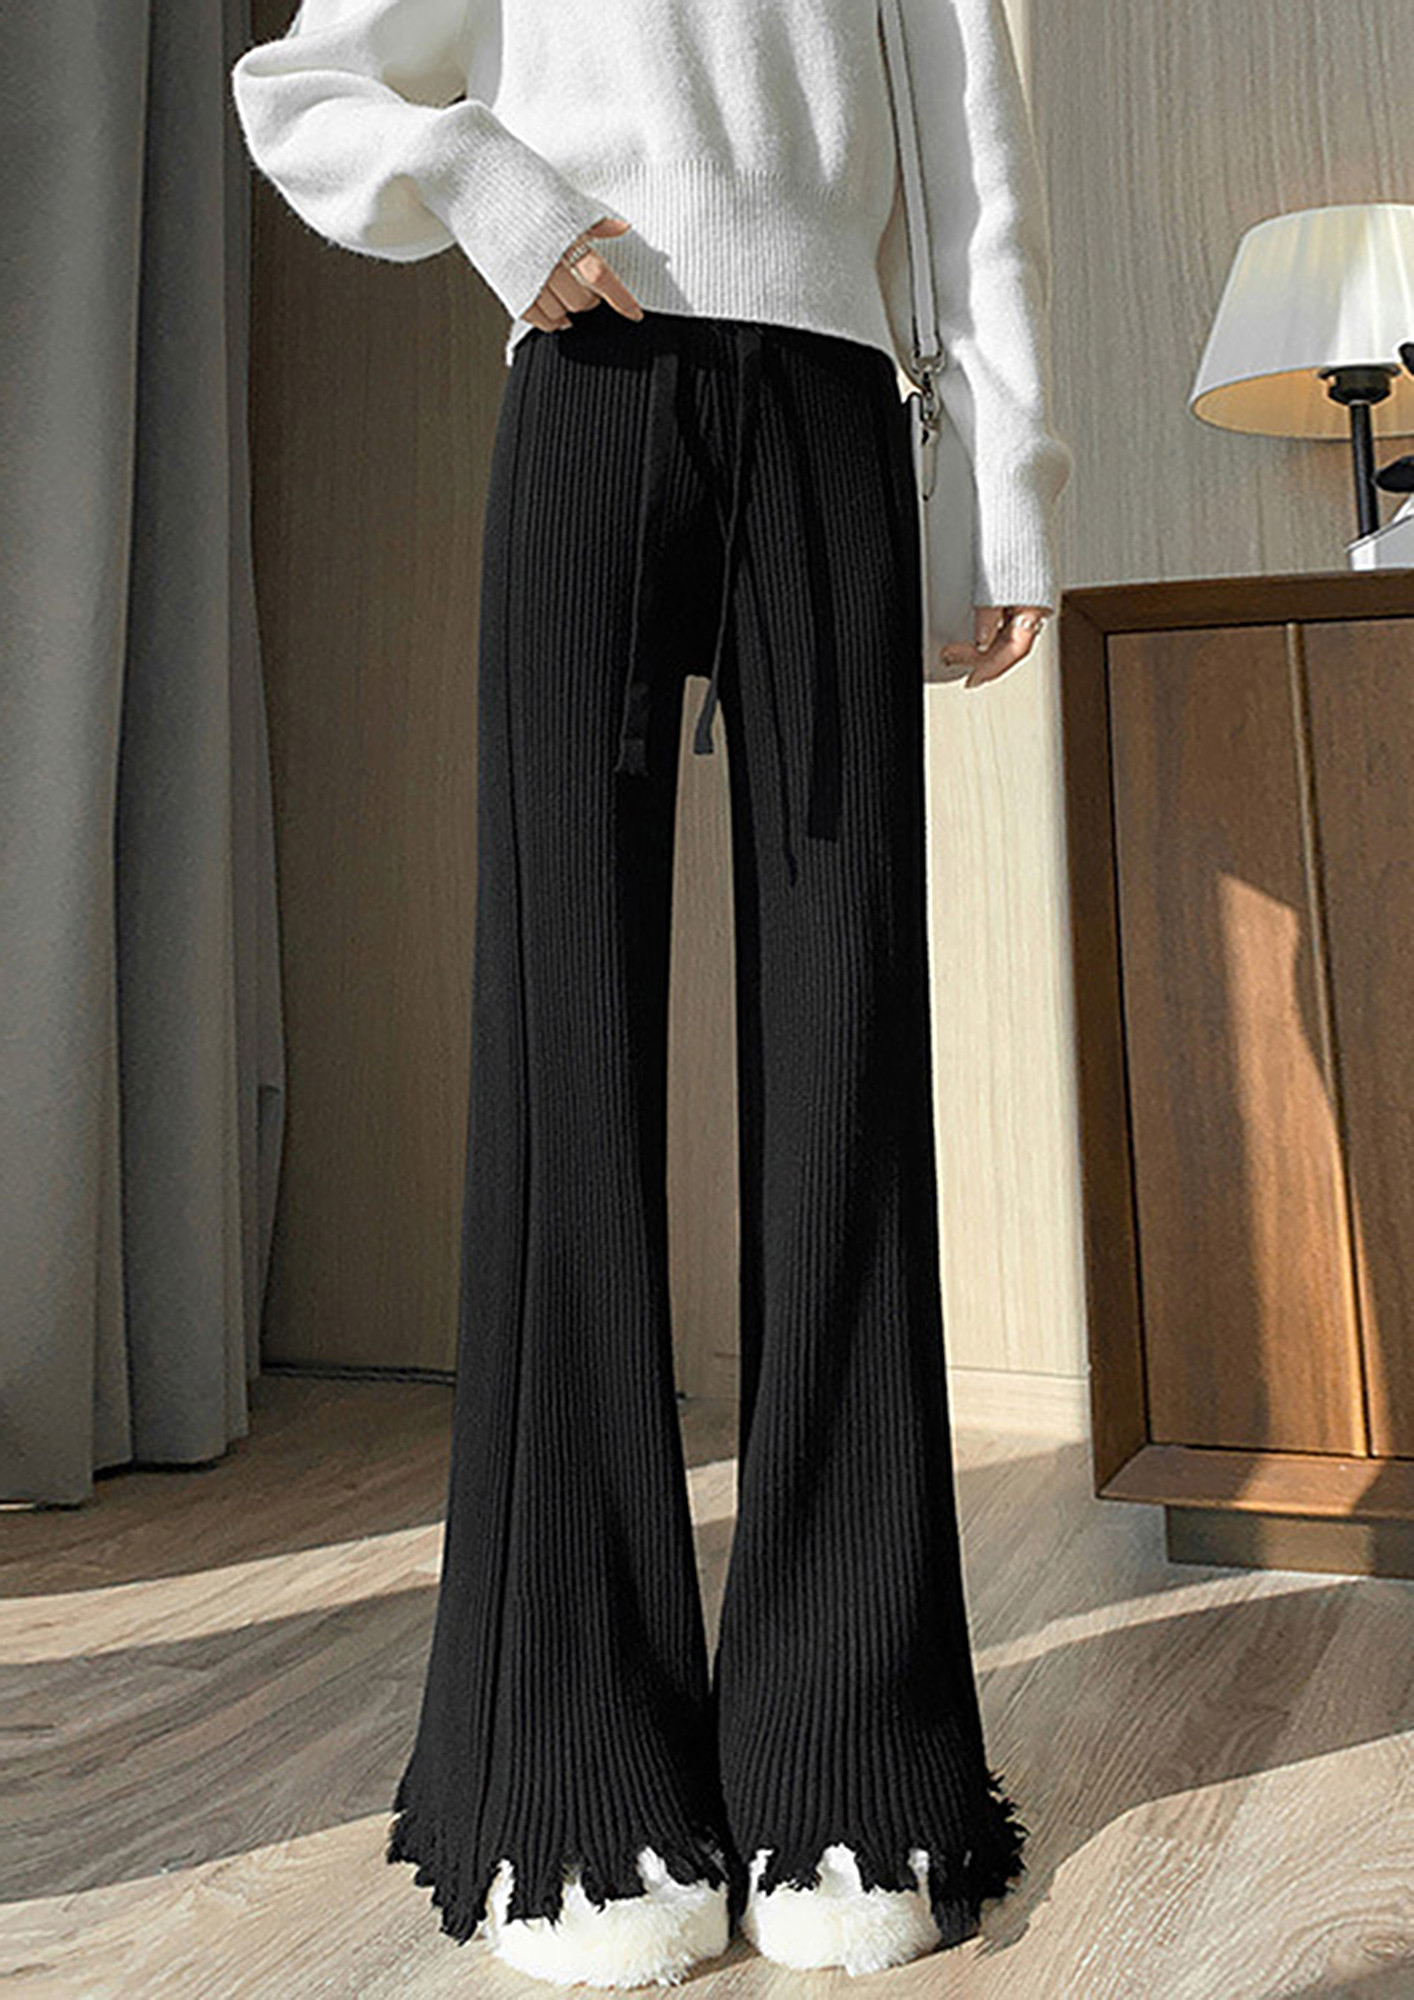 Buy Haider Ackermann women black trousers for $300 online on SV77,  203-3414-169-099